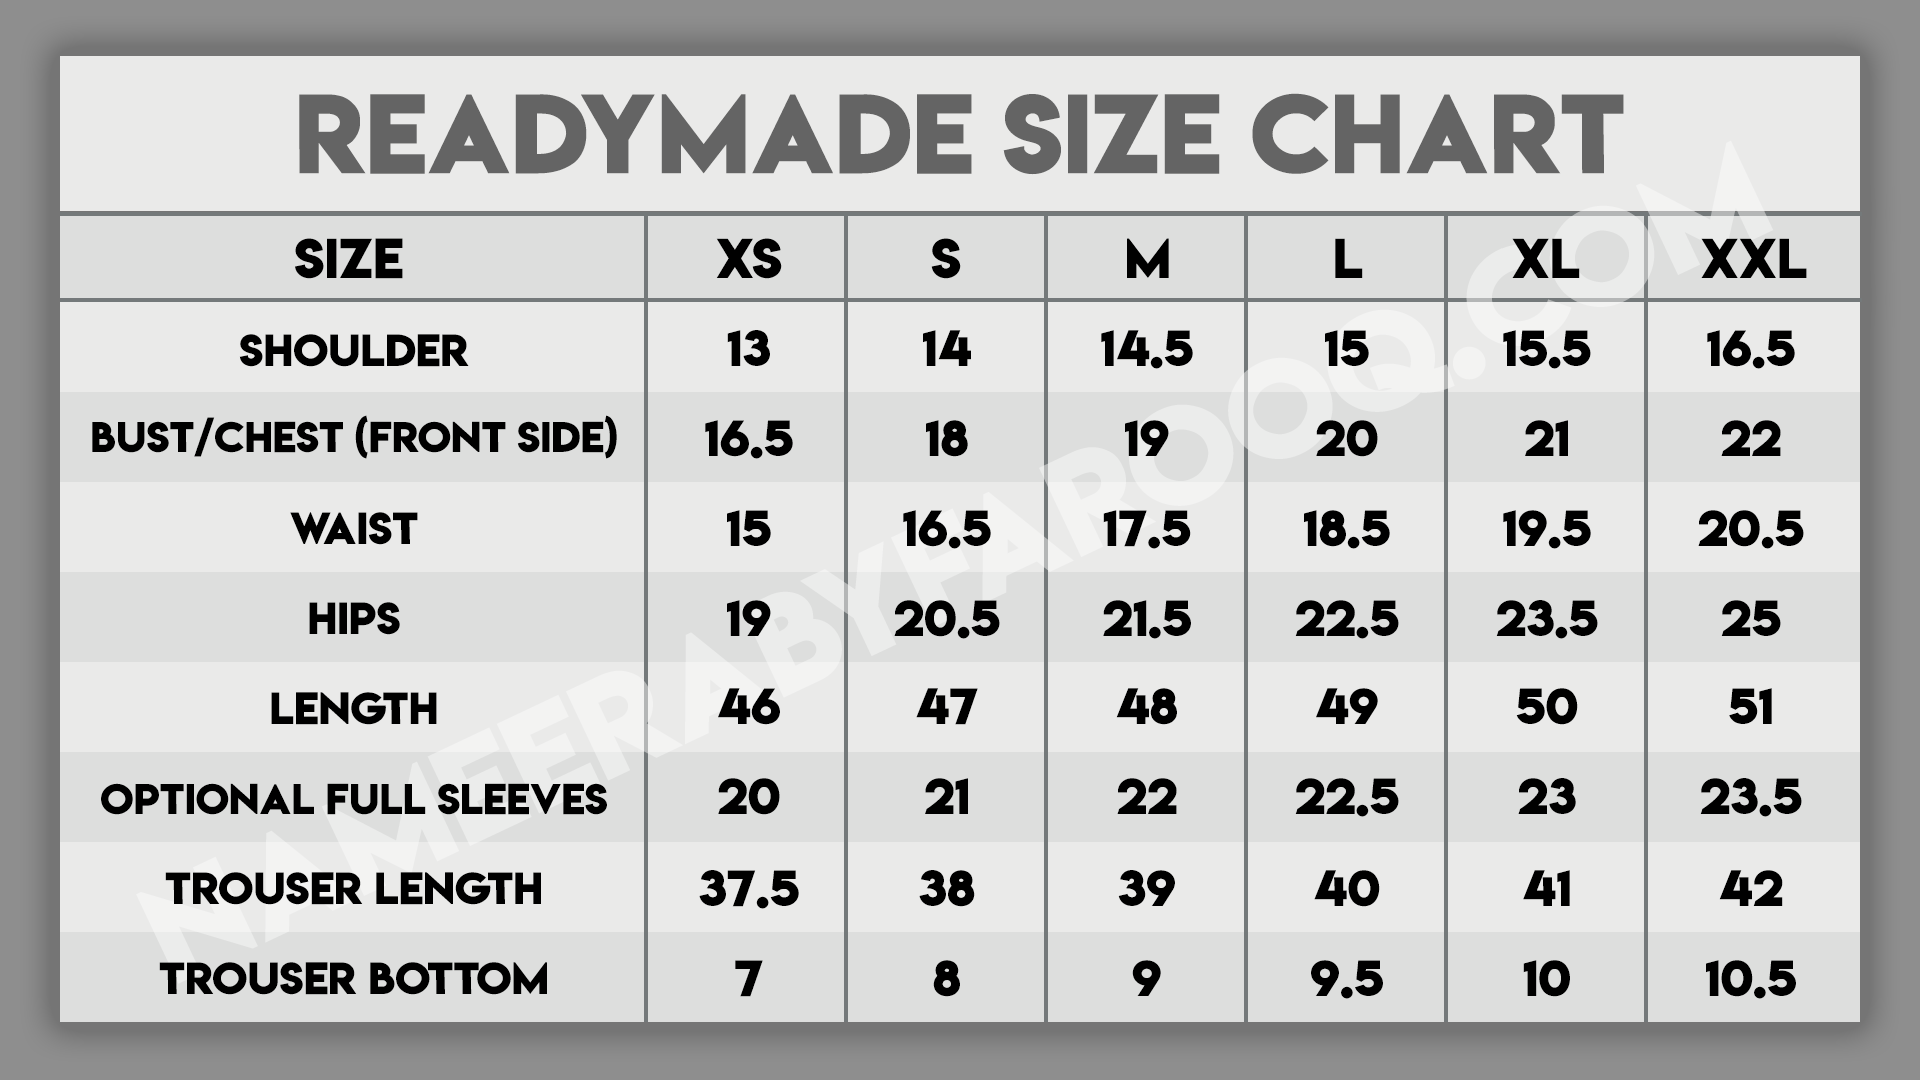 Standard Size Chart NameerabyFarooq 